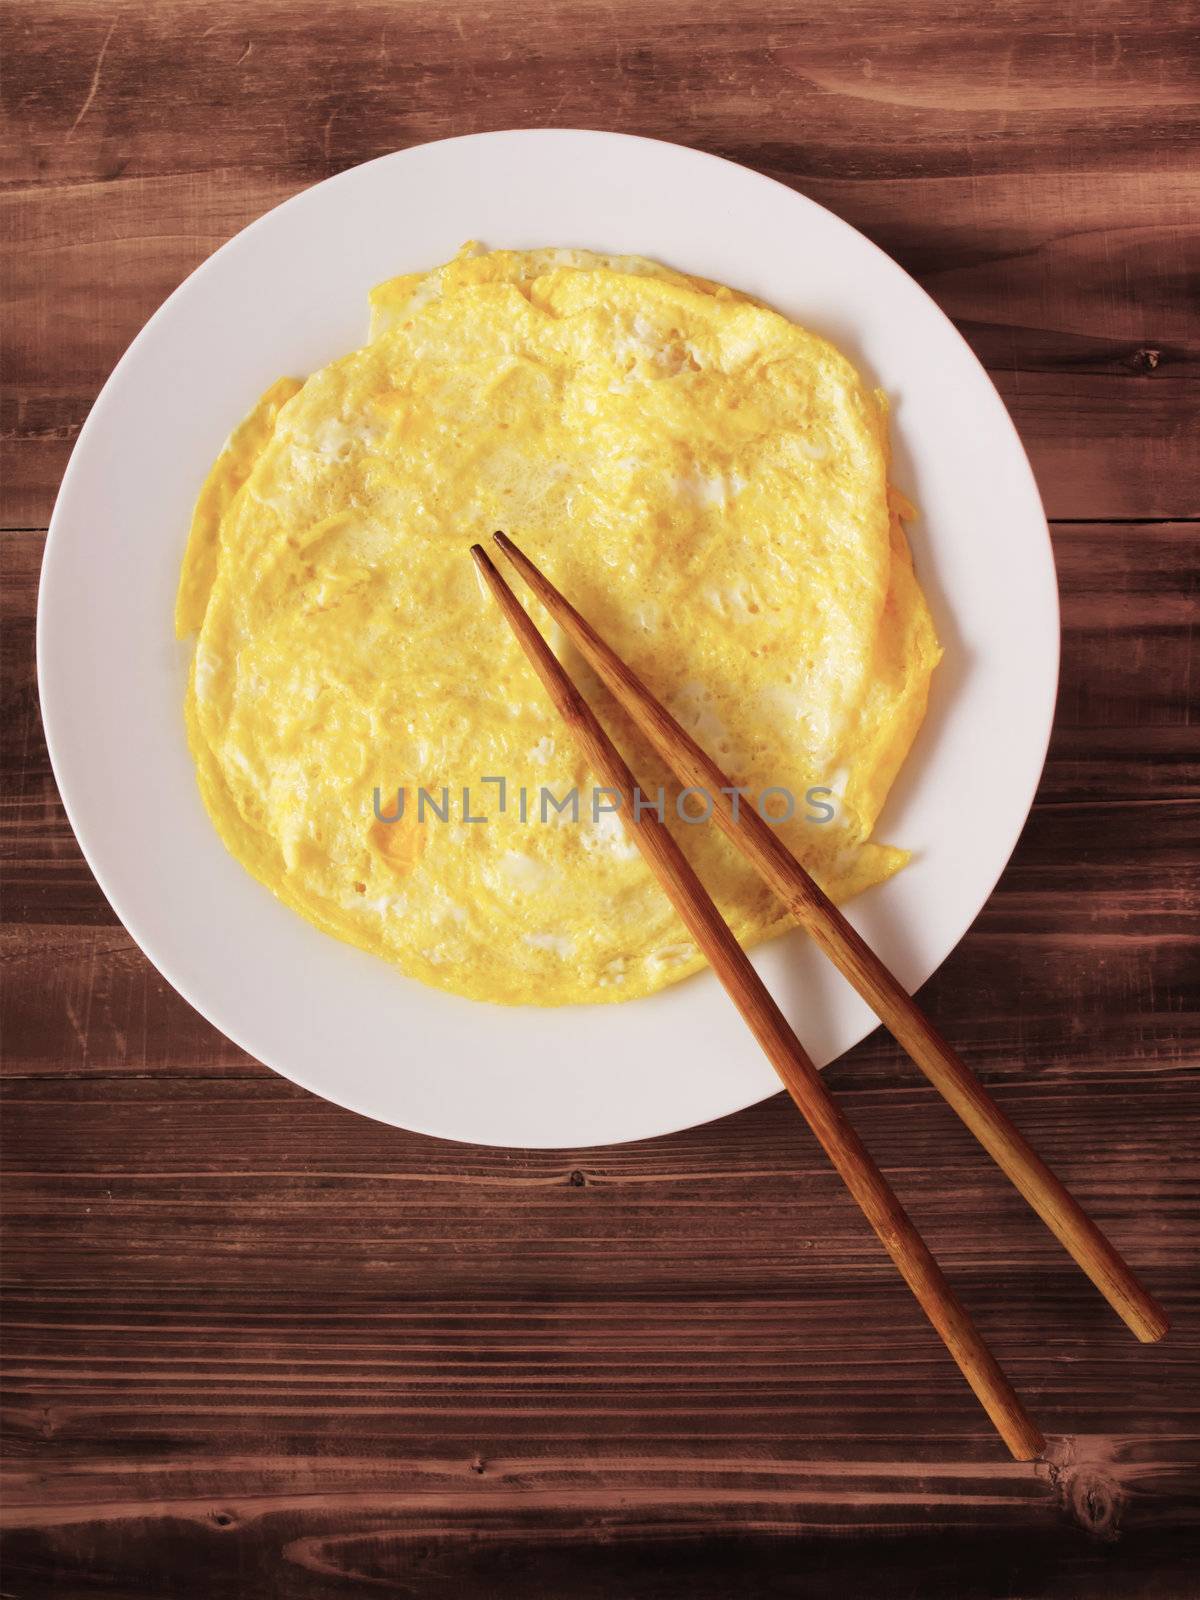 fried egg omelette by zkruger